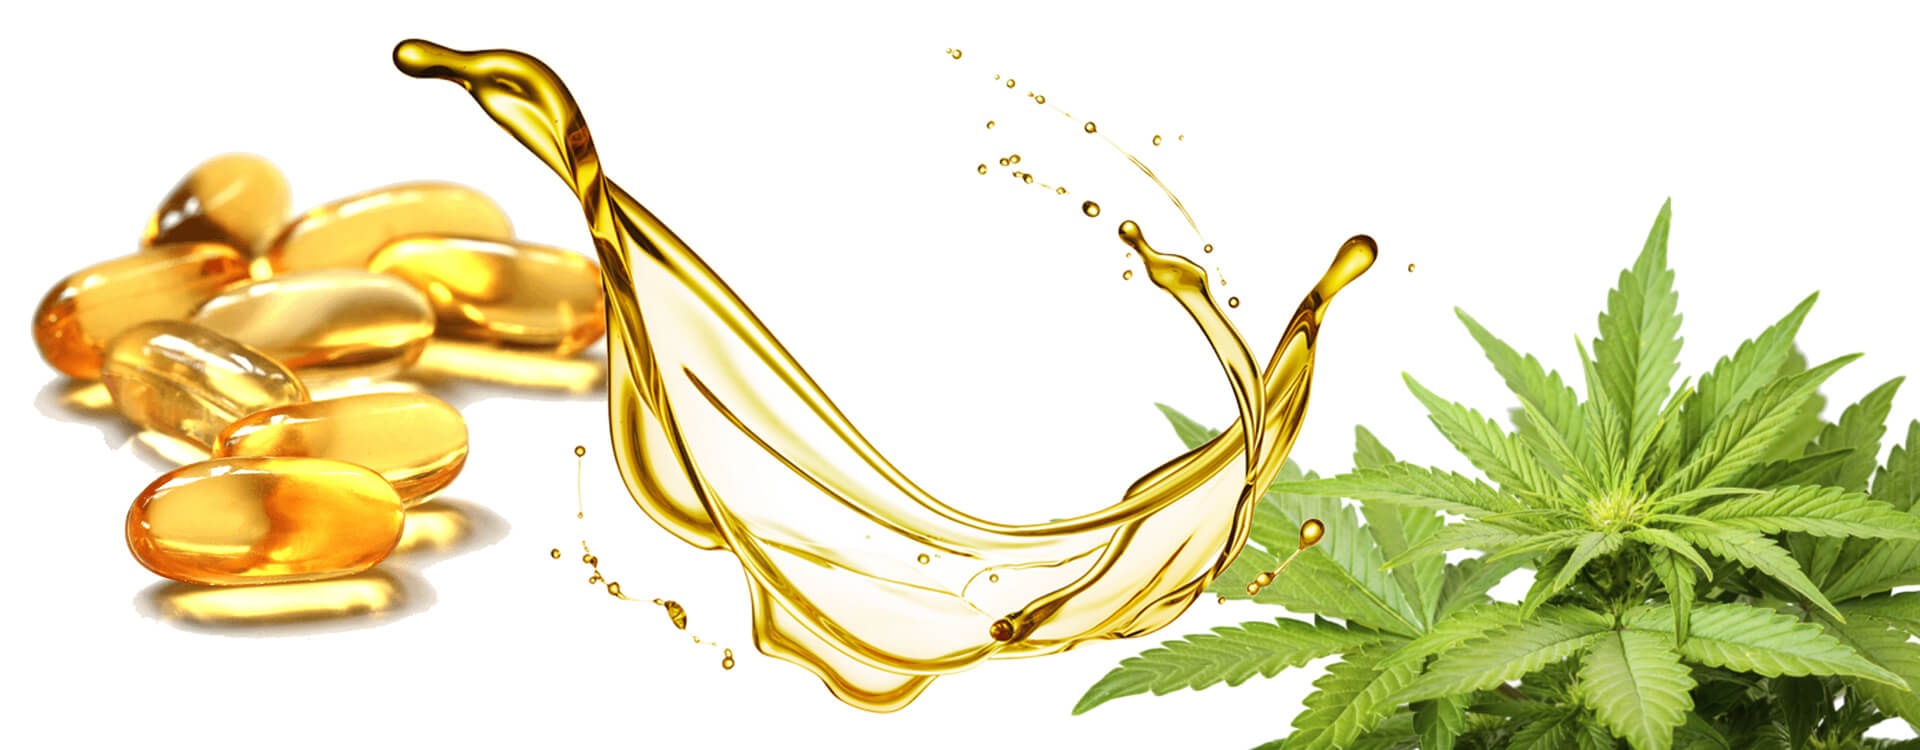 Ilustračný obrázok: CBD olej - kapsule s obsahom CBD oleja, olej v pohybe a rastlina liečivého konope